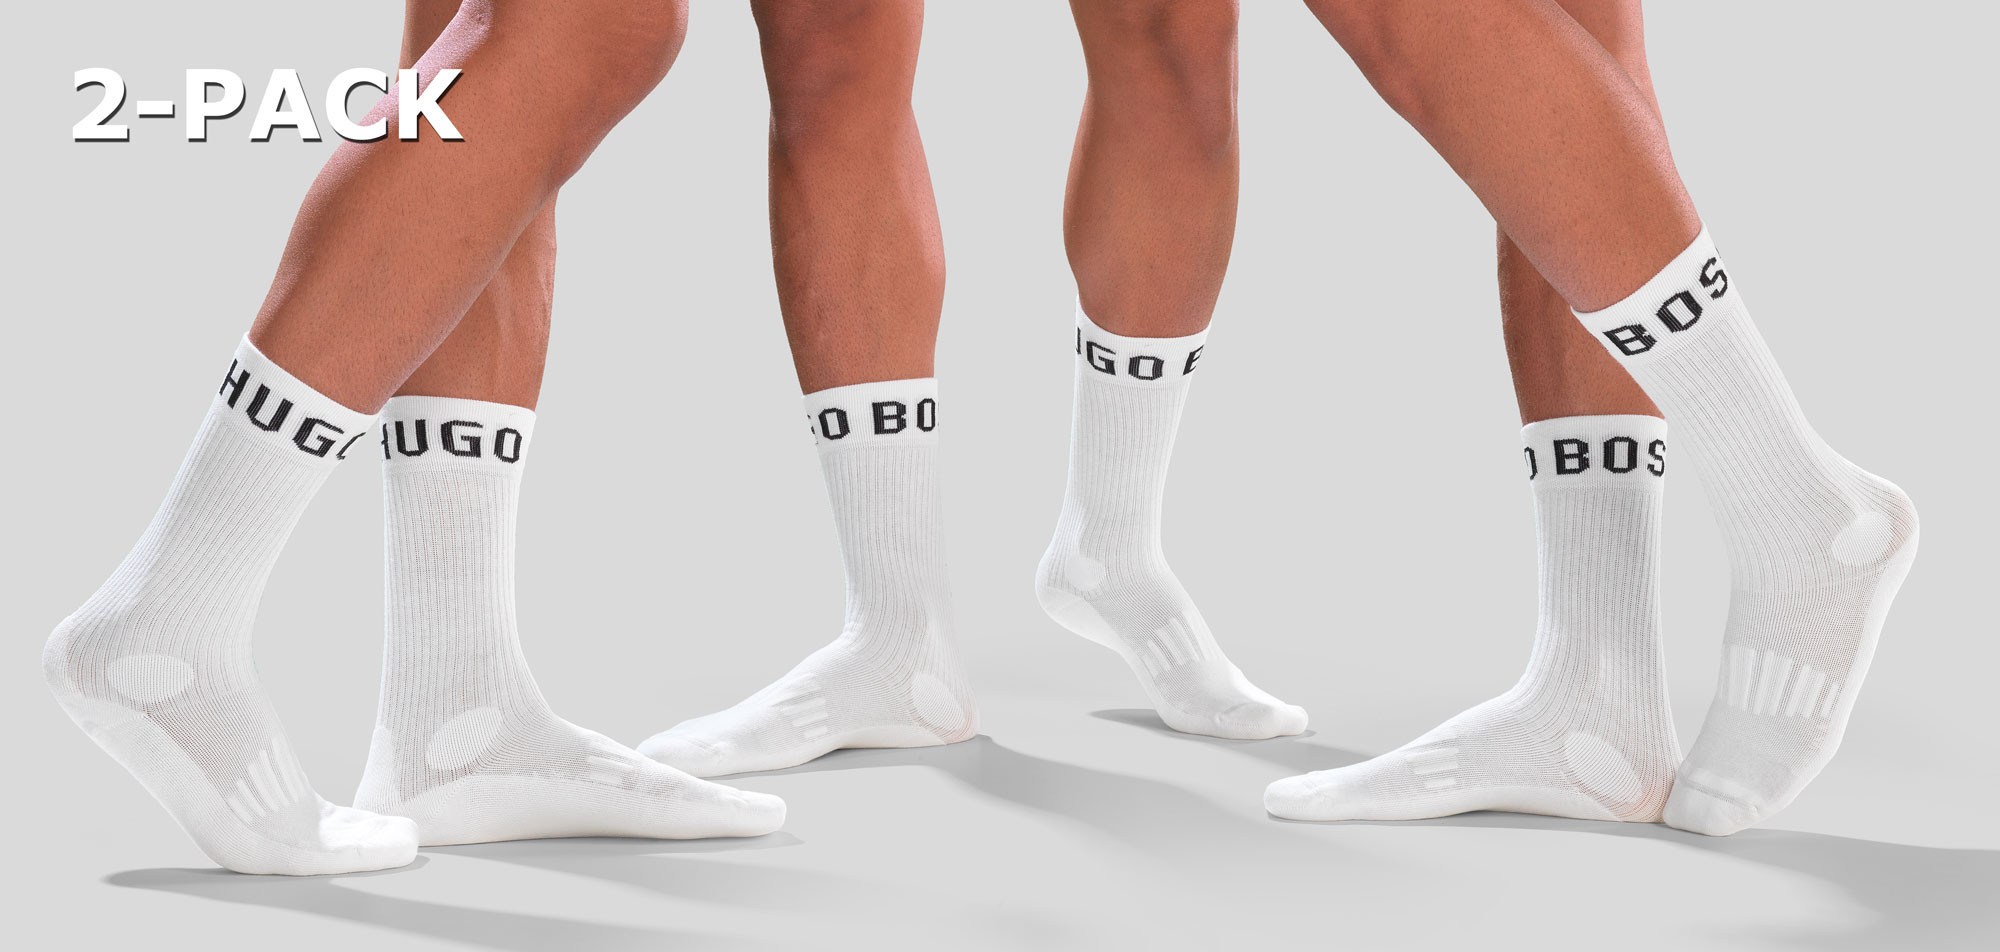 Boss RS Sport Socks 2-Pack 454,